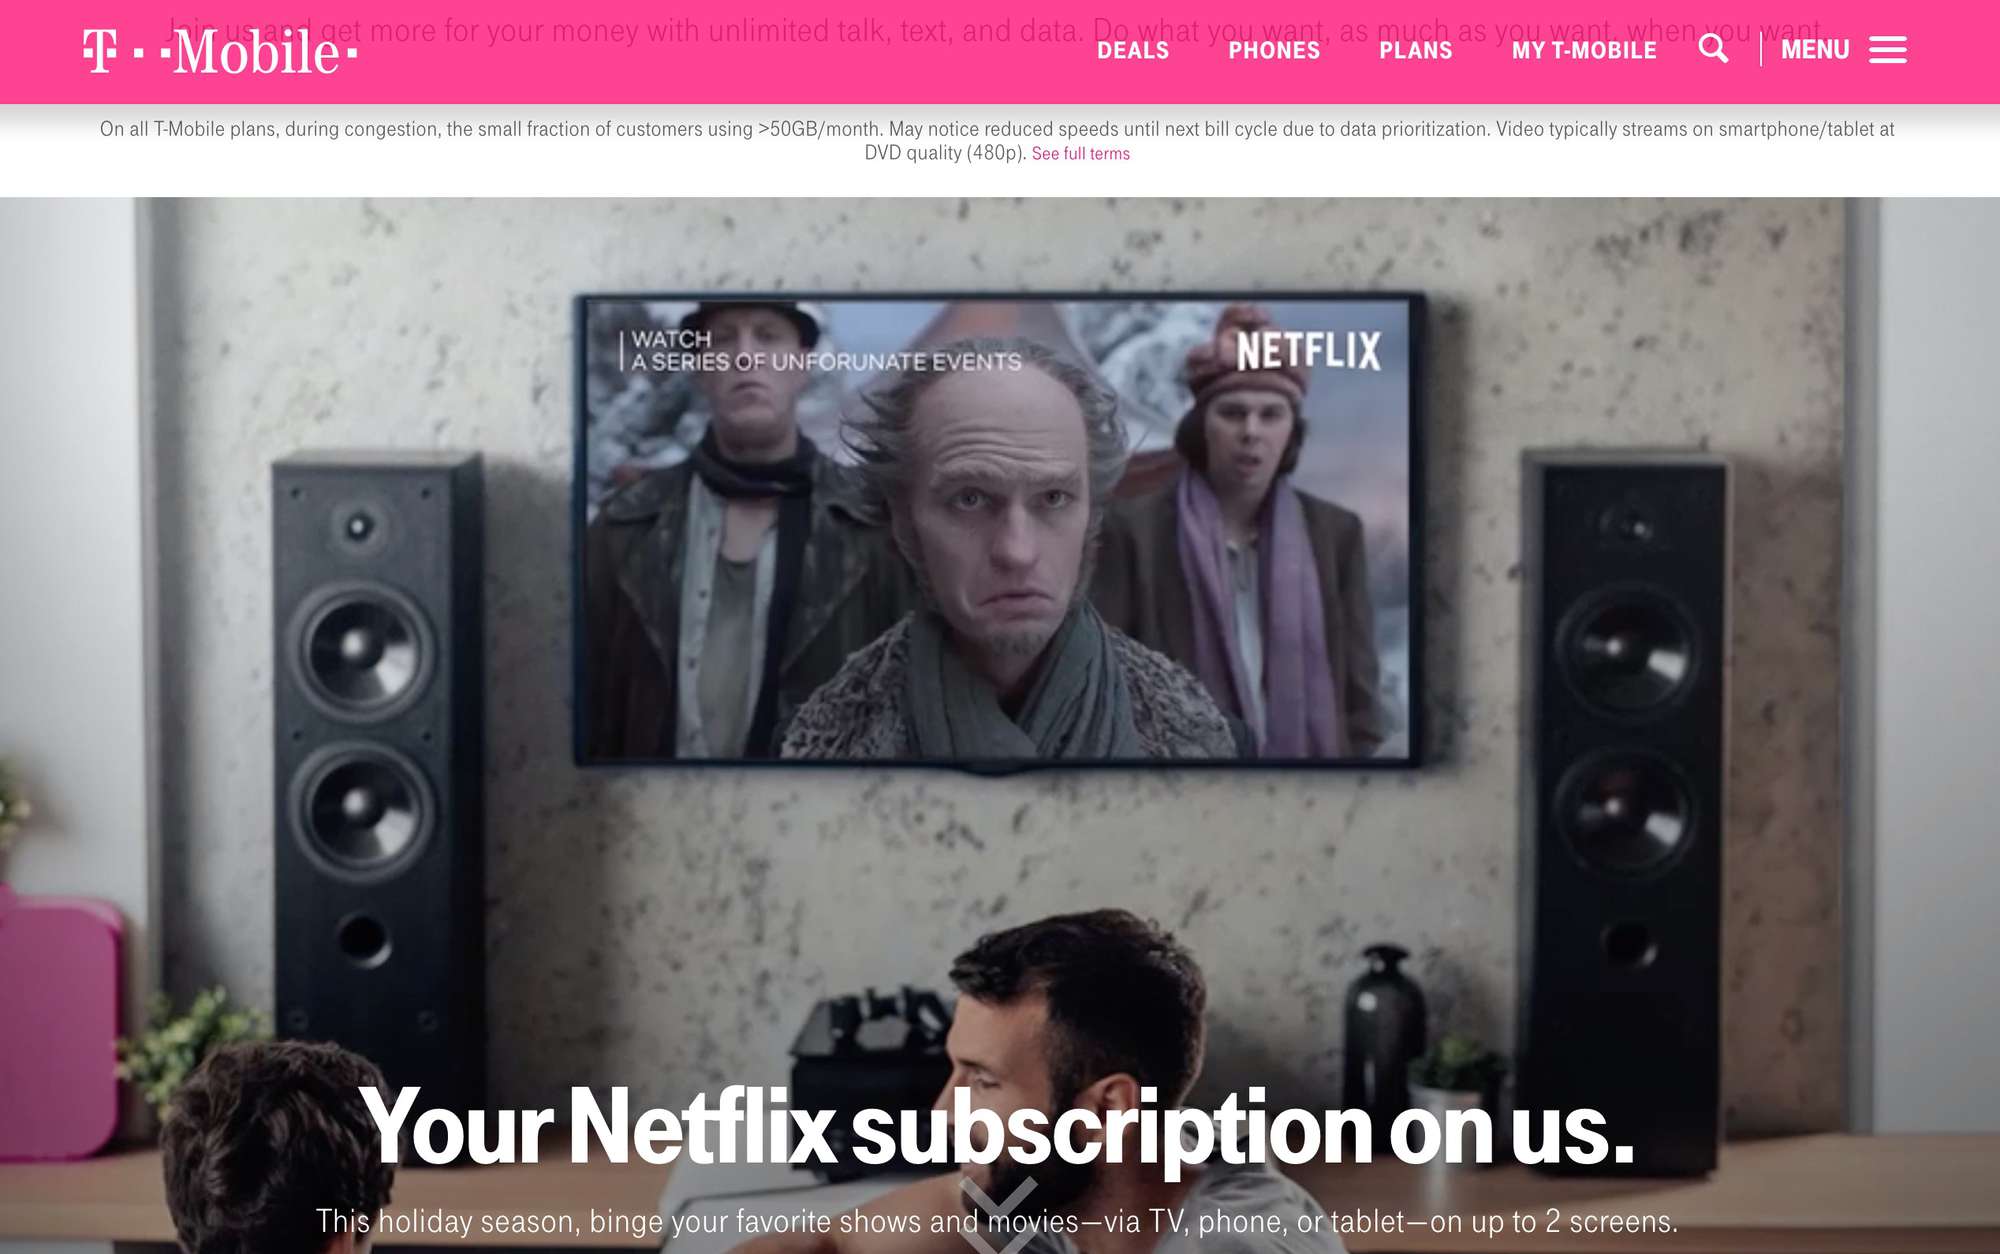 T-Mobile-webpagina met Netflix-deal